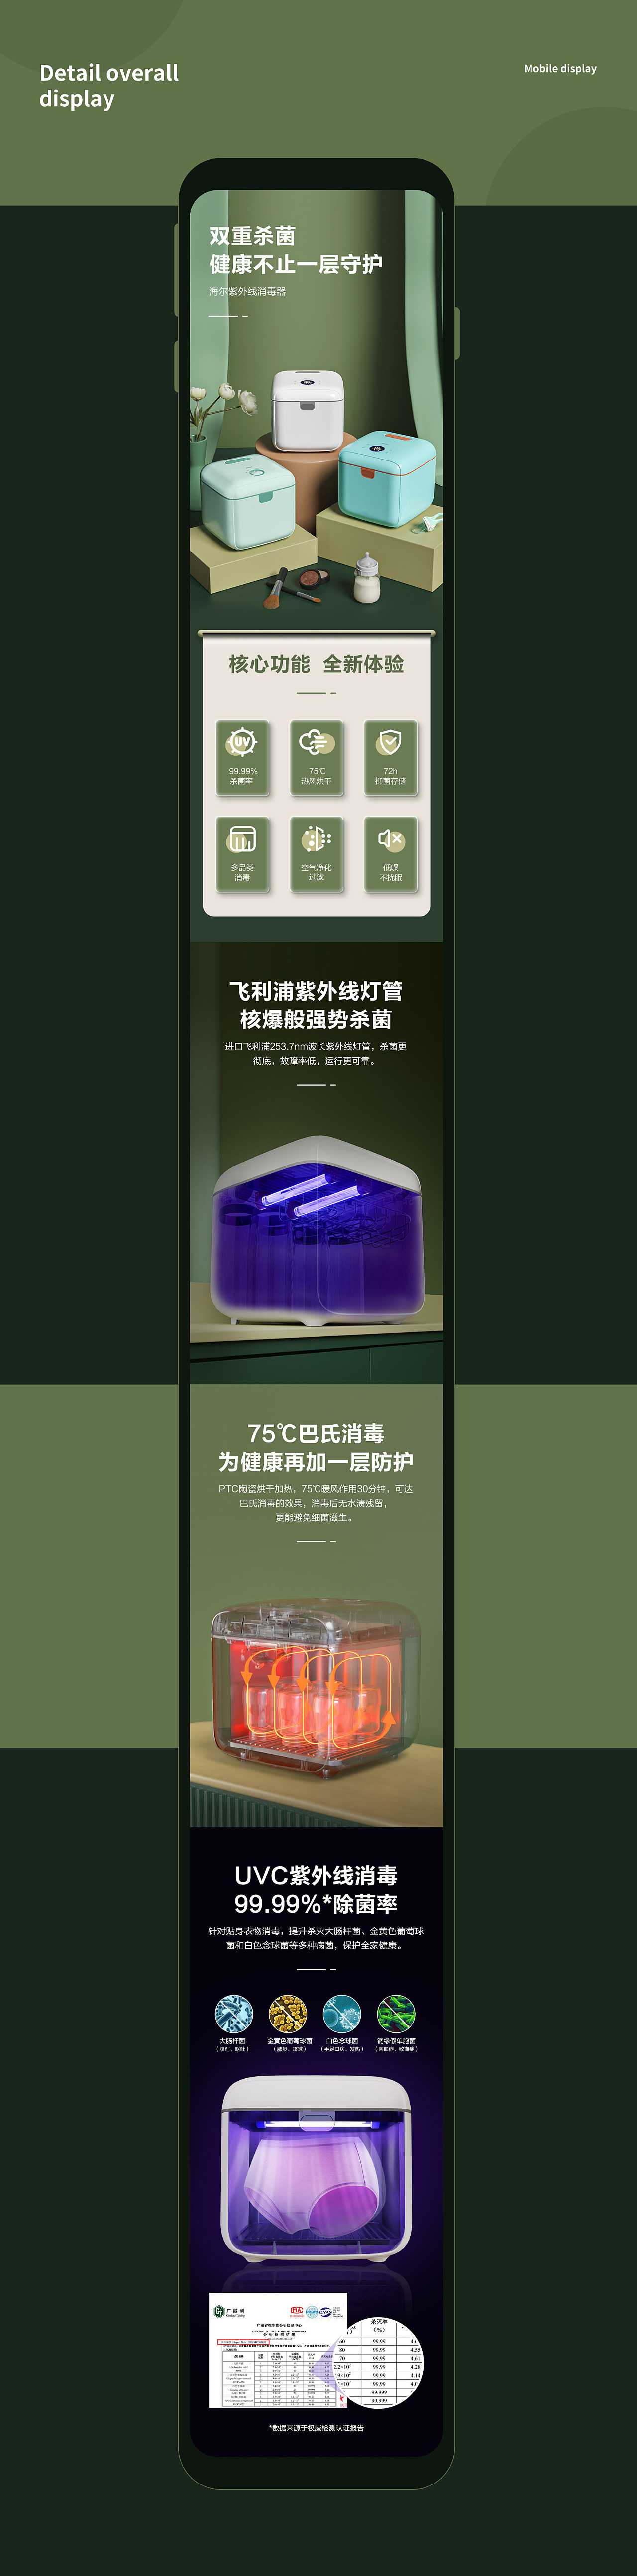 海尔紫外线消毒器详情页